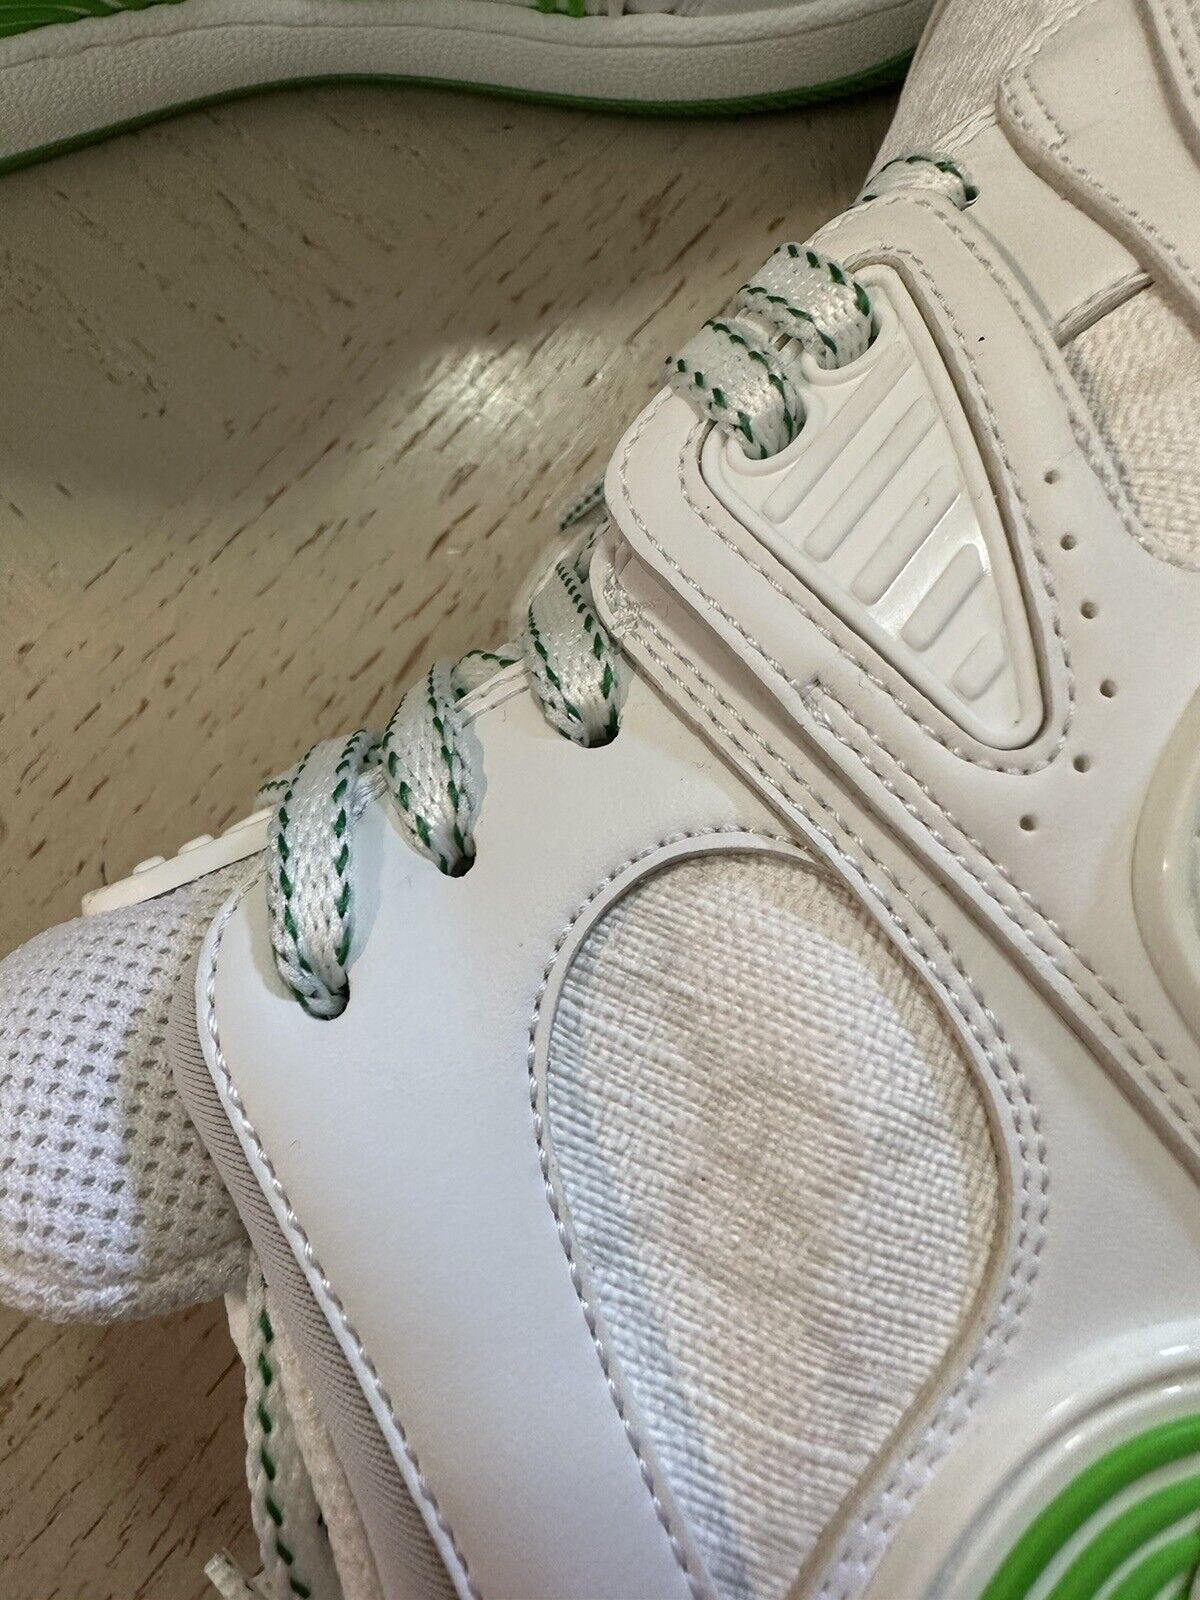 New $950 Gucci Women GG Demetra Basket Sneakers White/Green 7 US/37 Eu 700290